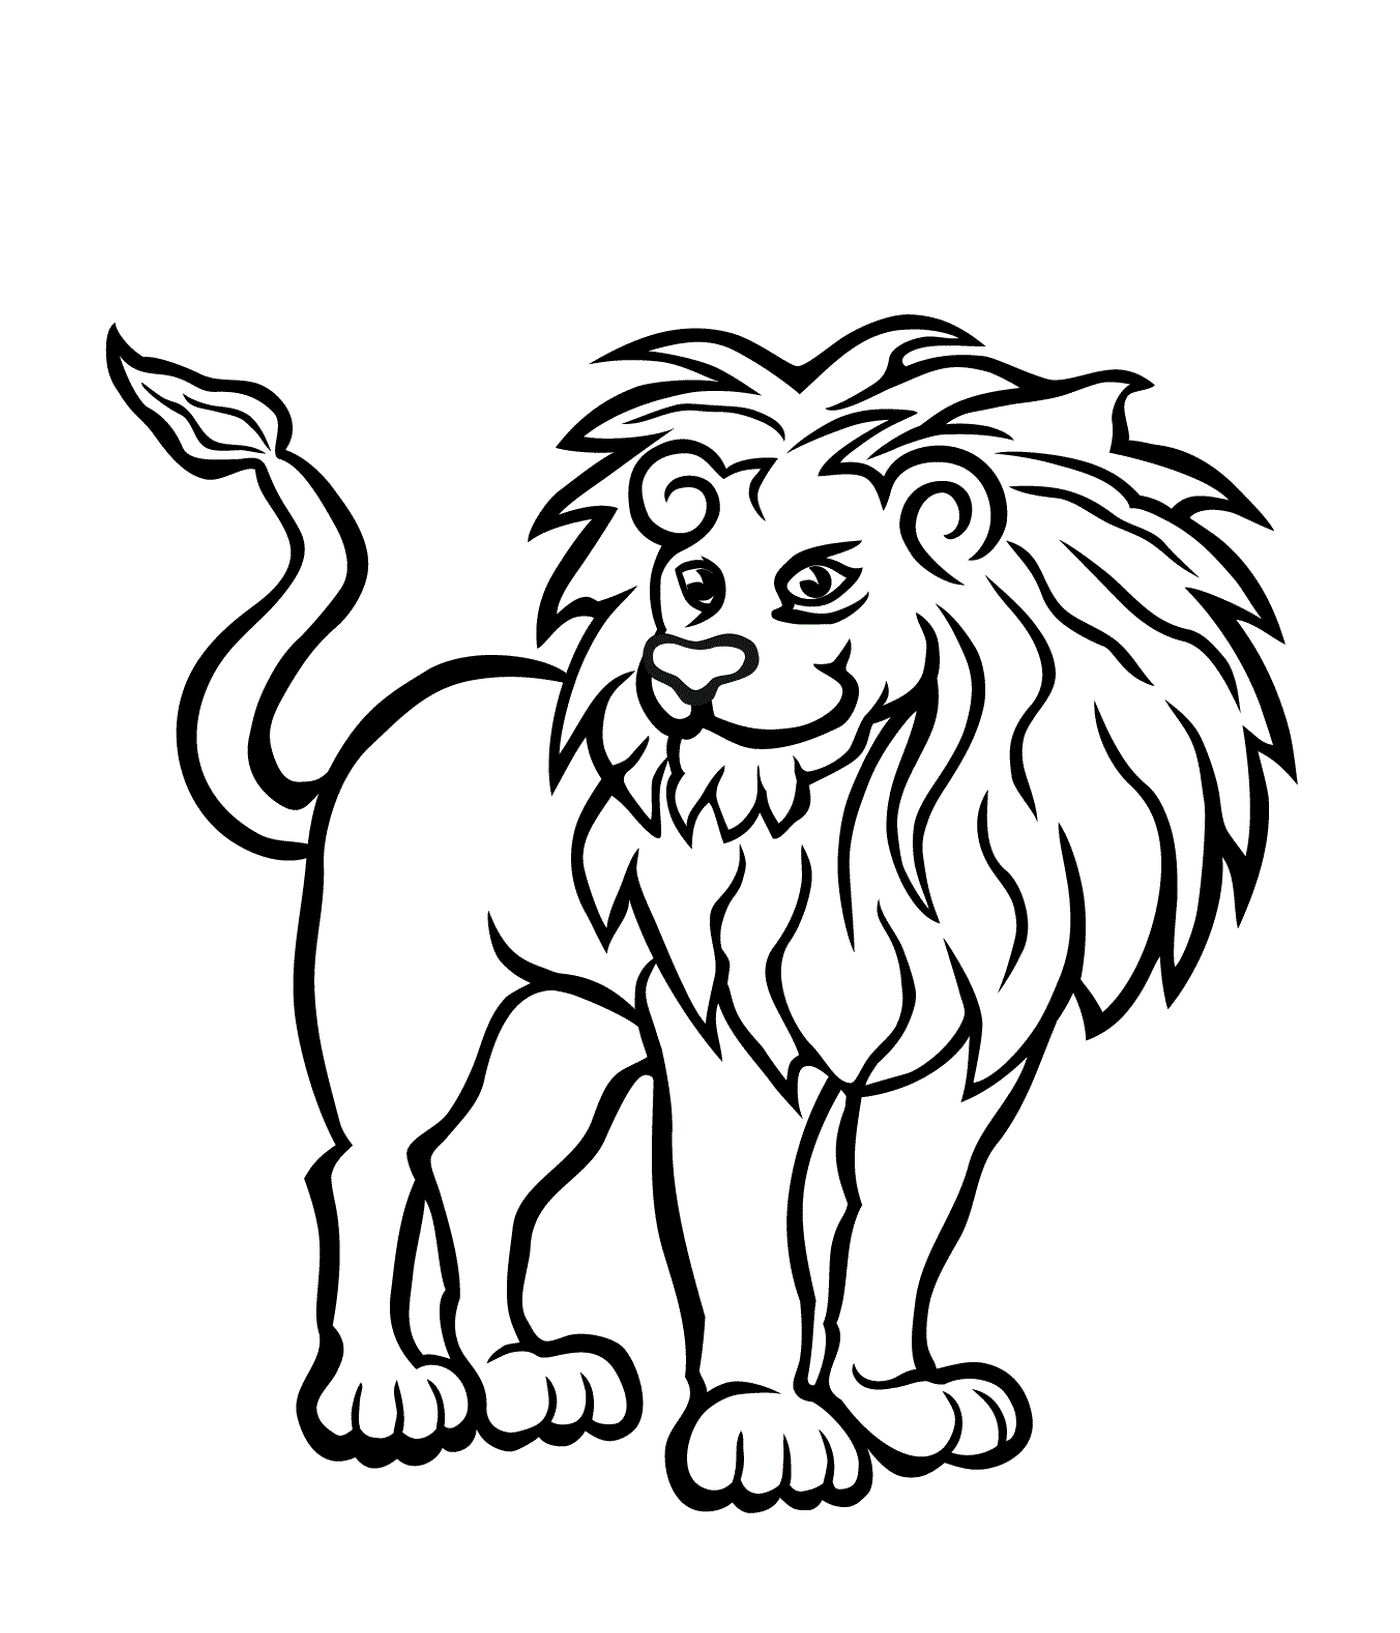  Leão saudável e forte 